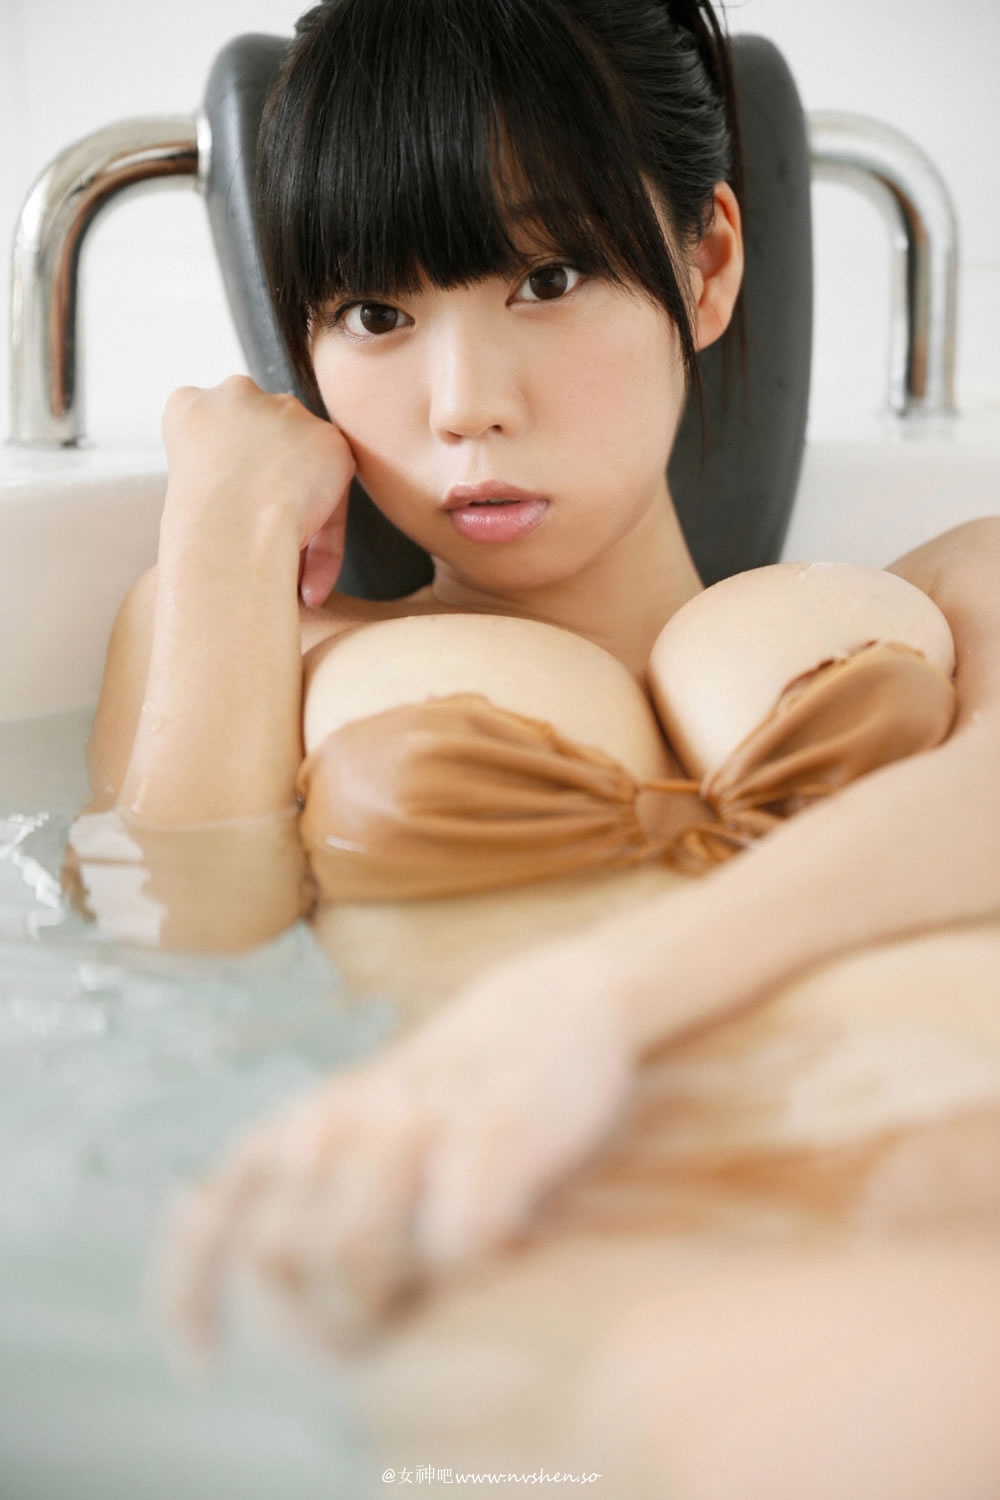 日本美少女青山浴室湿身写真